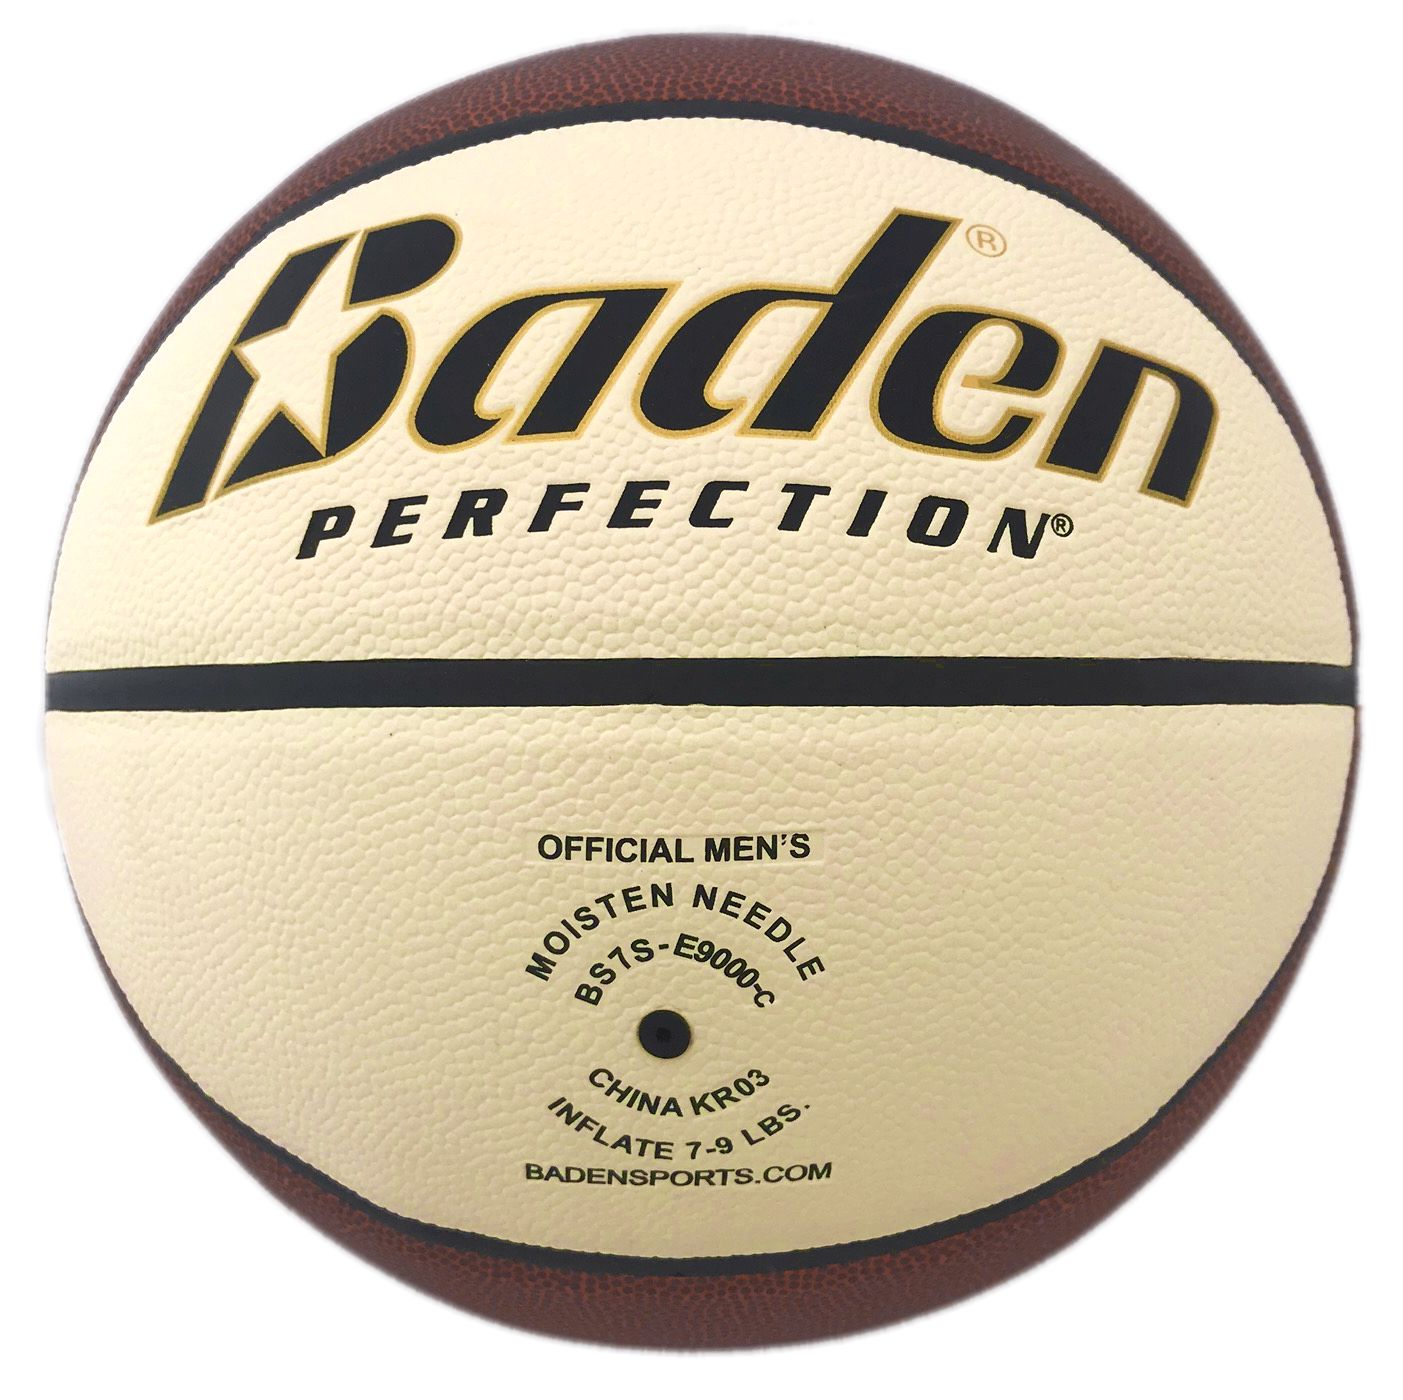 Baden Basketball Equalizer Indoor/Outdoor - Tan/Cream